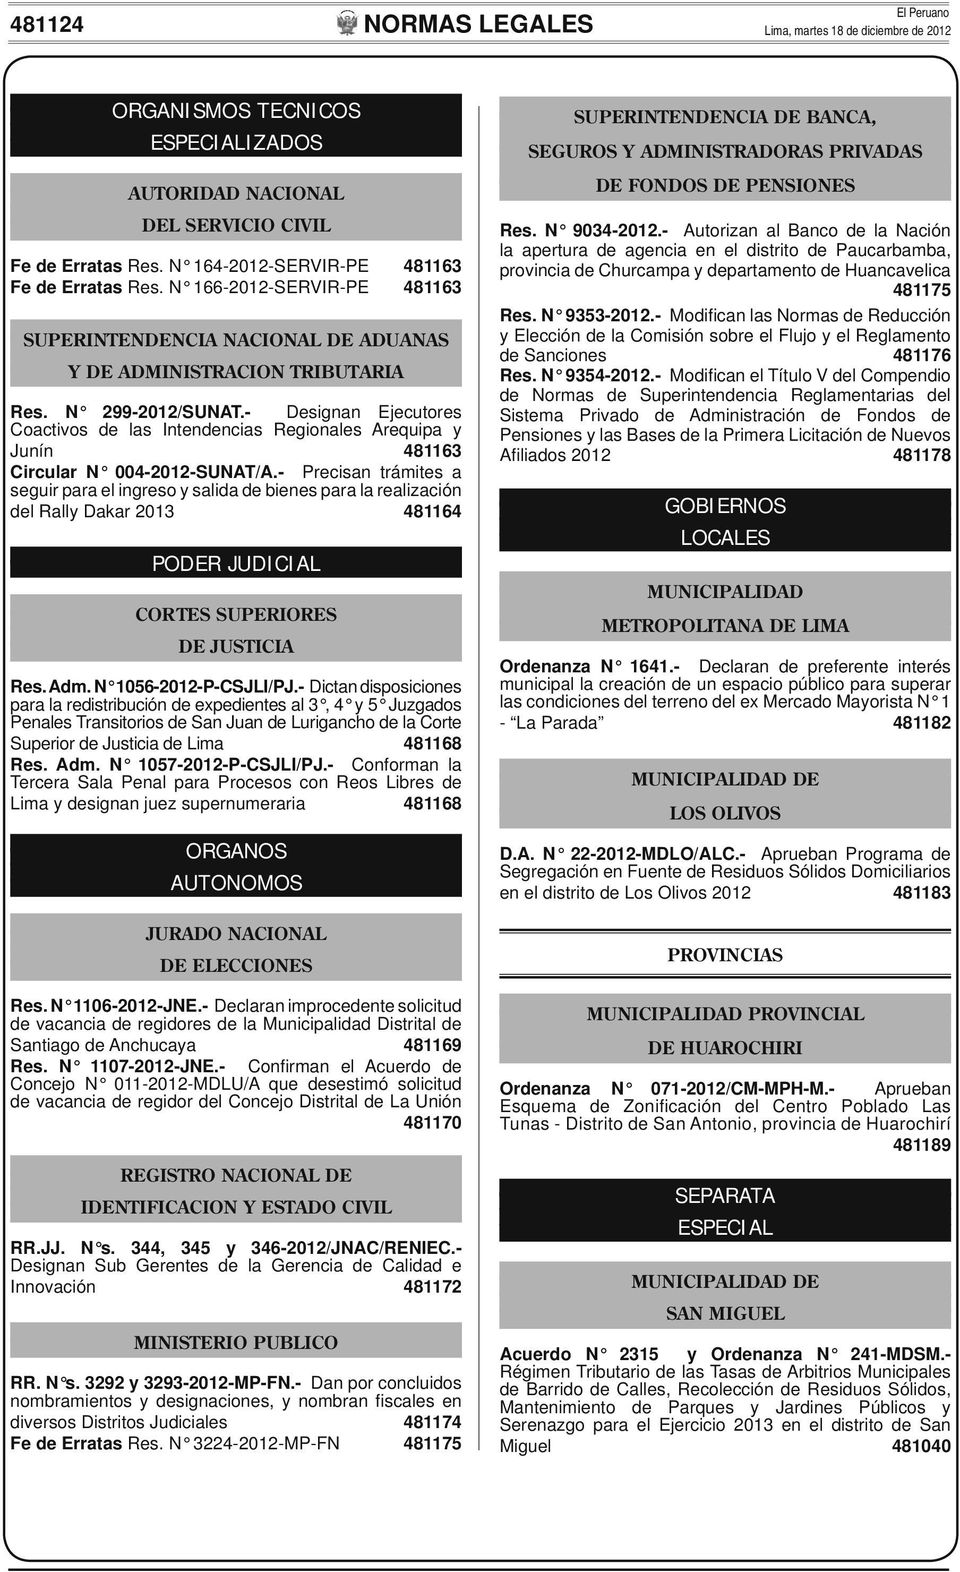 - Designan Ejecutores Coactivos de las Intendencias Regionales Arequipa y Junín 481163 Circular N 004-2012-SUNAT/A.